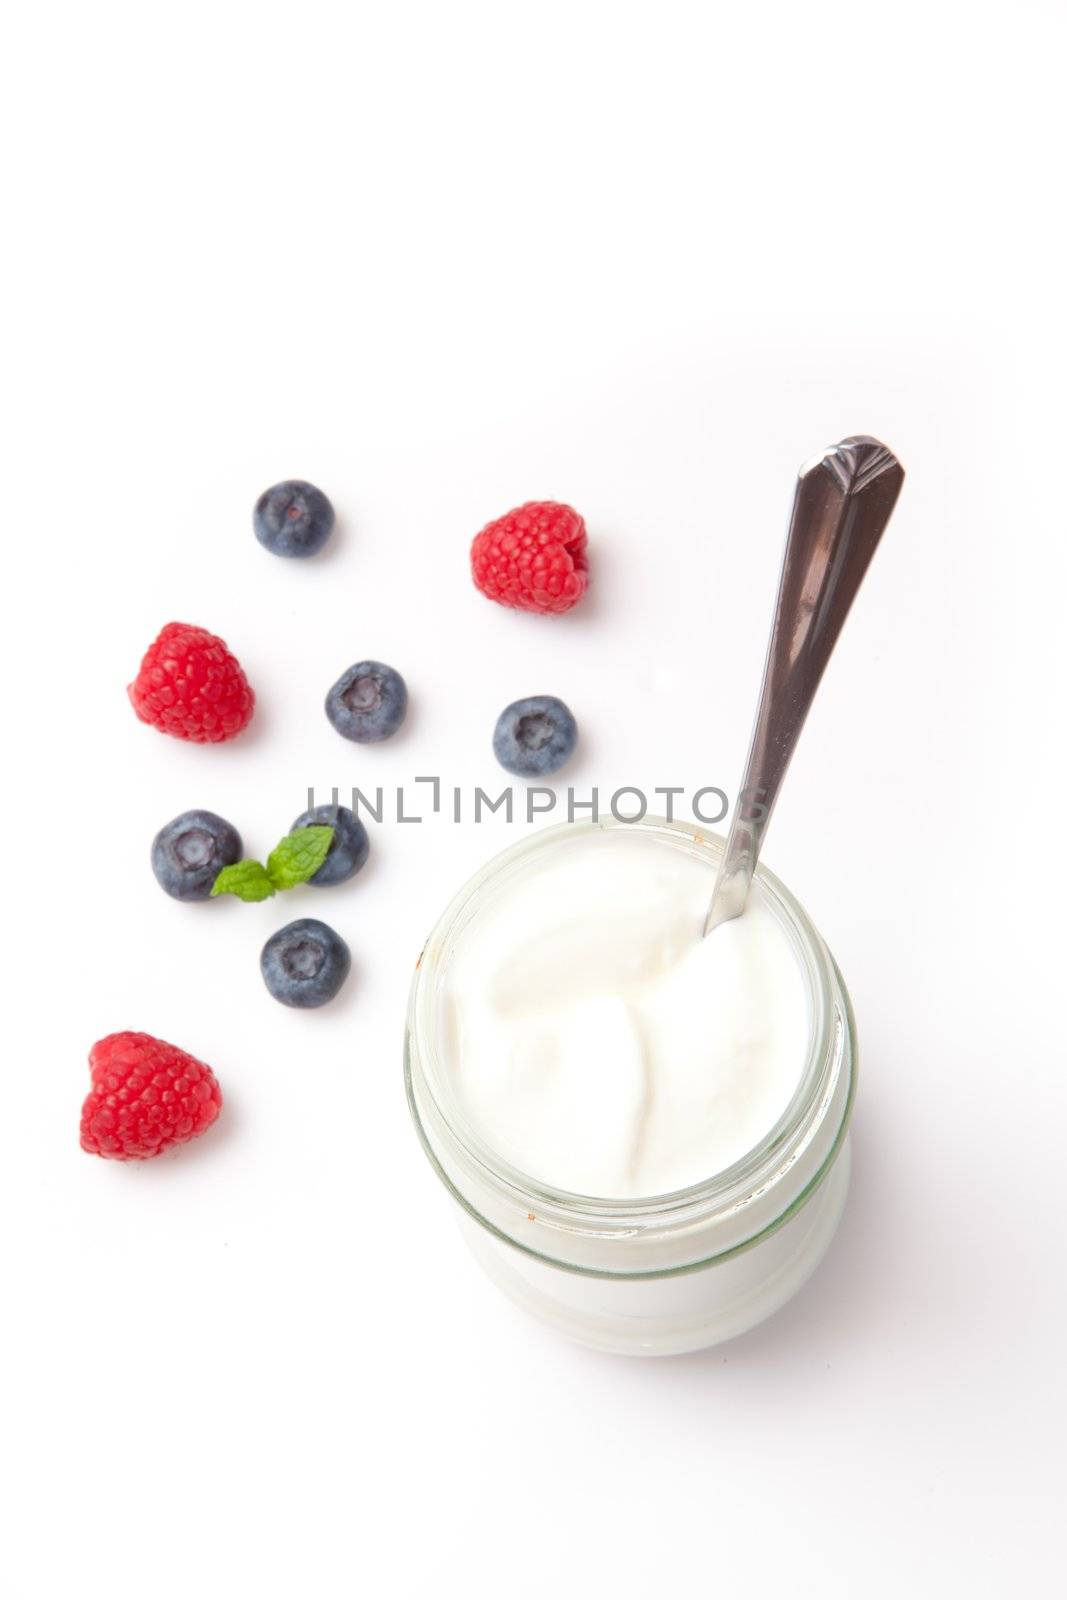 Yogurt and berries by Wavebreakmedia